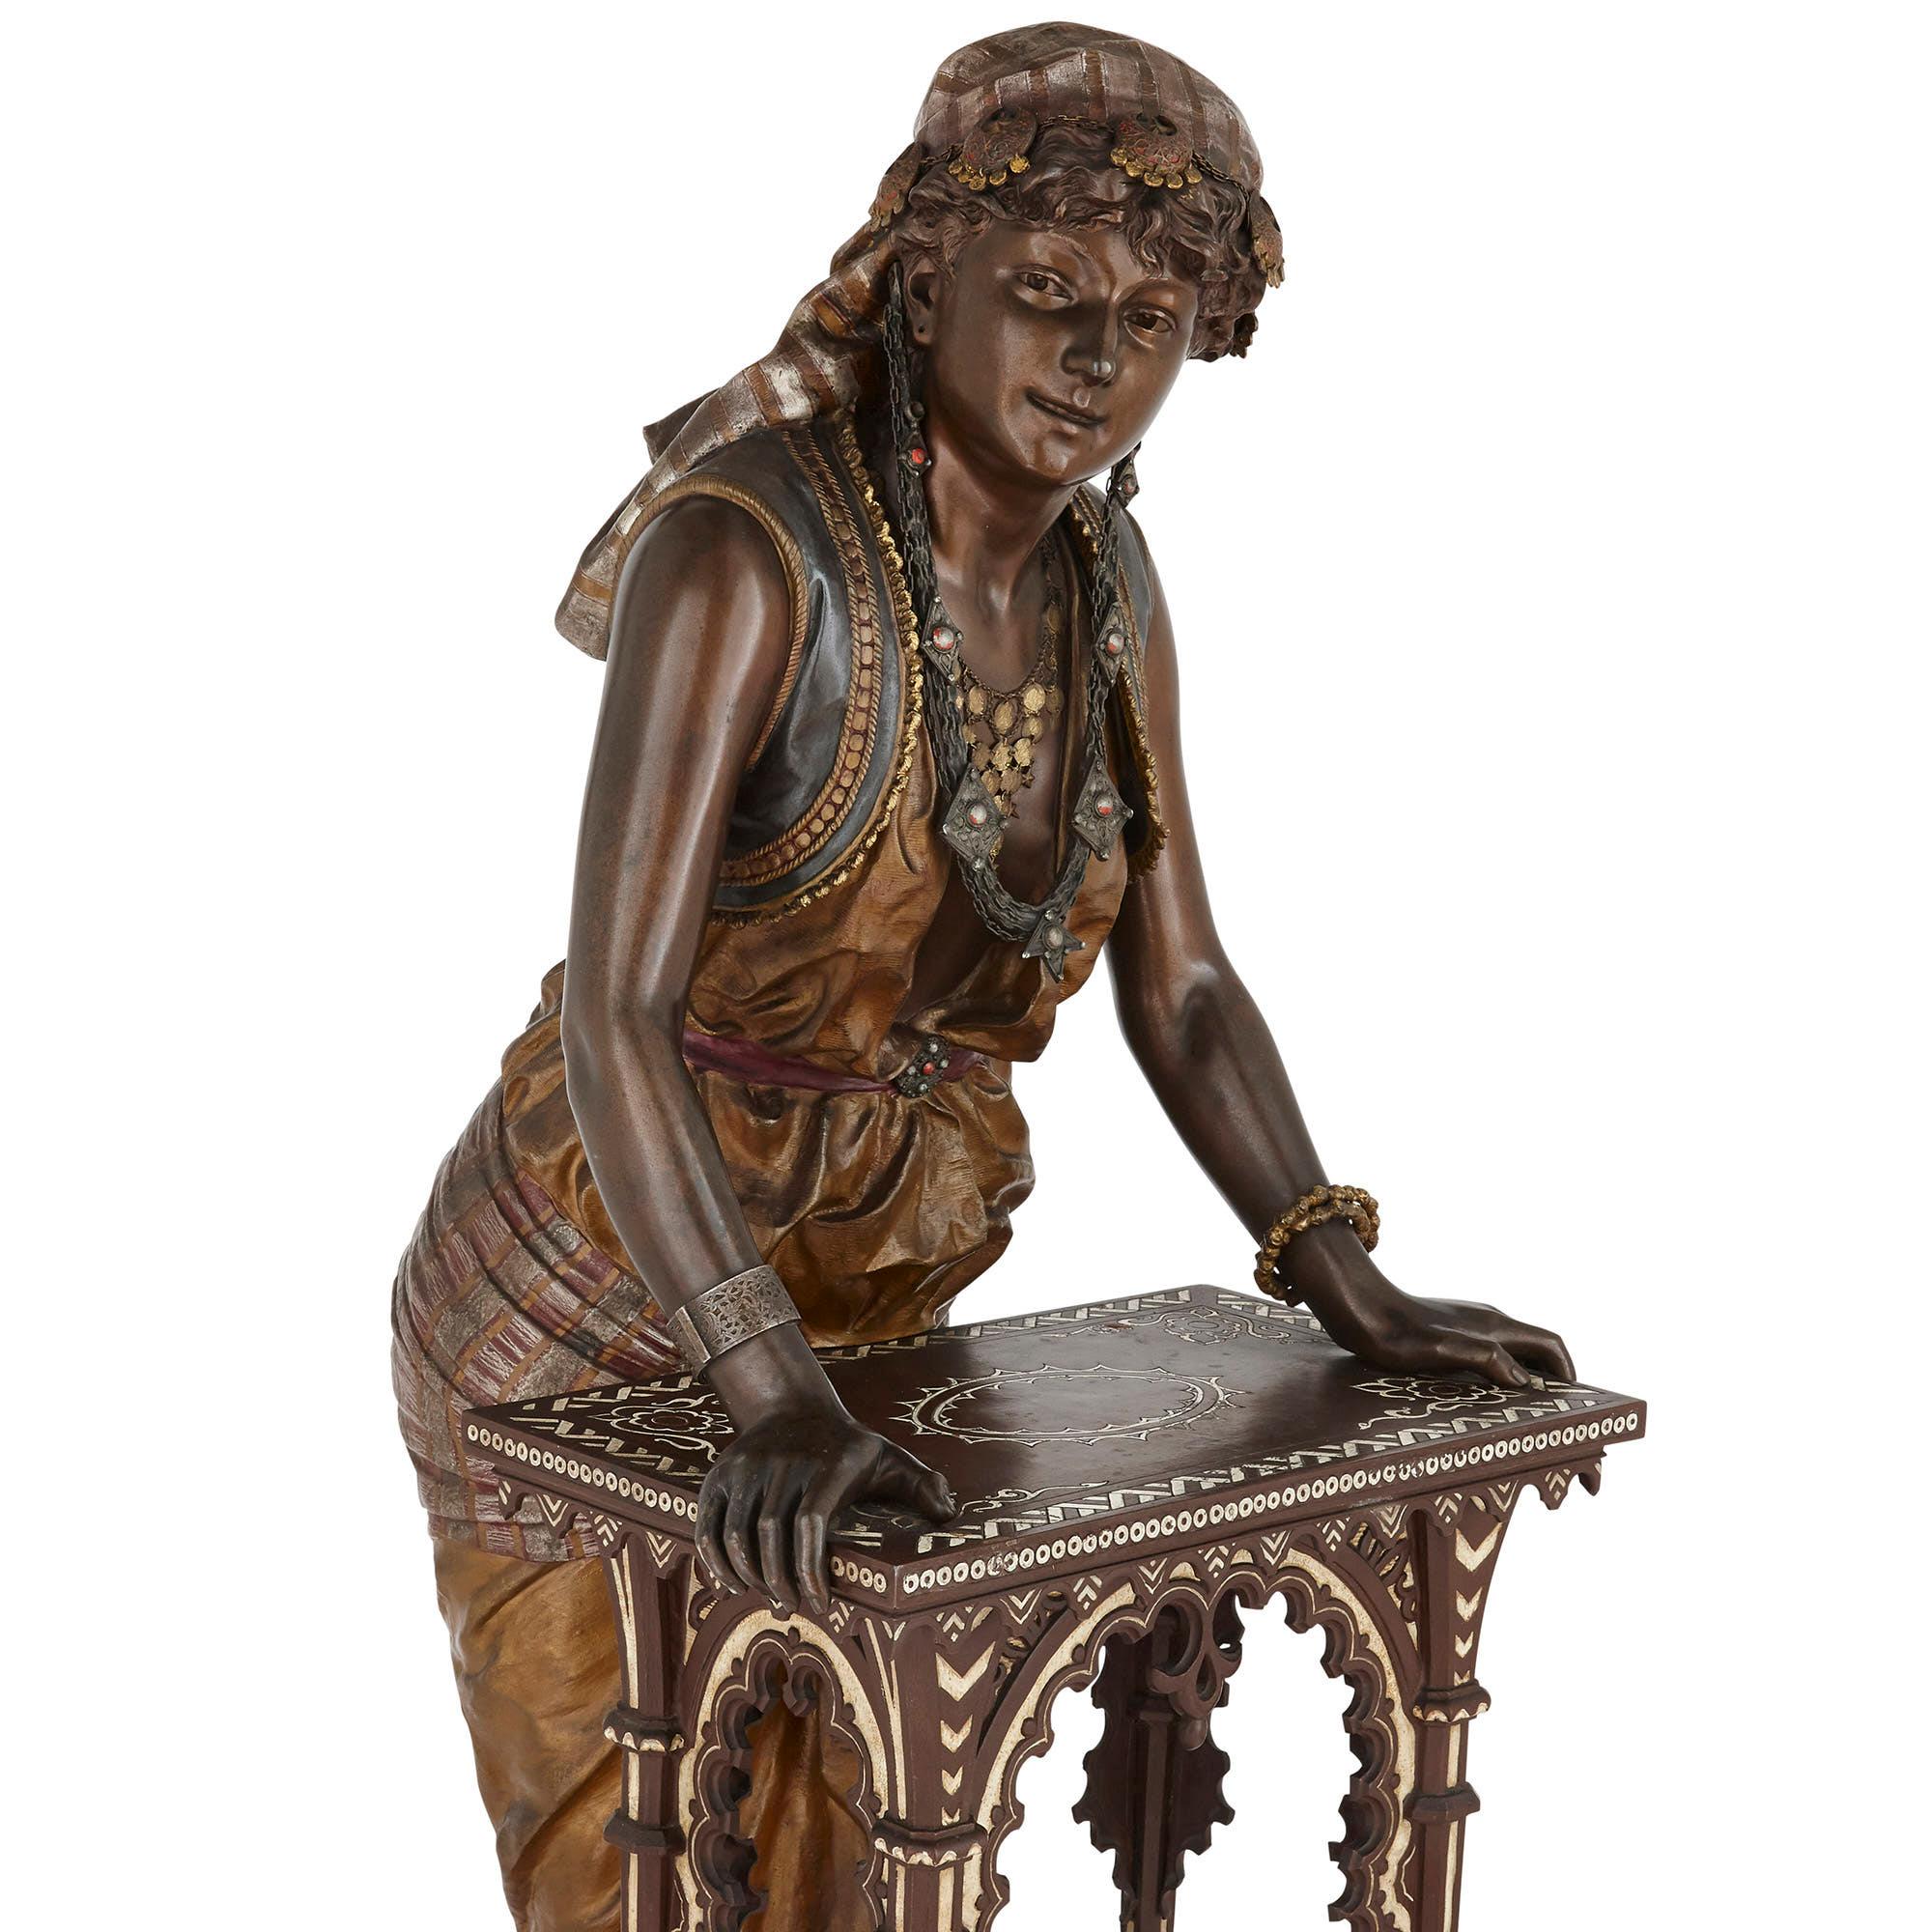 Monumentale französische Skulptur einer weiblichen Figur mit Tisch von Louis Hottot
Französisch, Ende 19. Jahrhundert
Maße: Höhe 145cm, Breite 51cm, Tiefe 57cm

Der berühmte Bildhauer Louis Hottot (Franzose, 1829-1905) schuf diese schöne